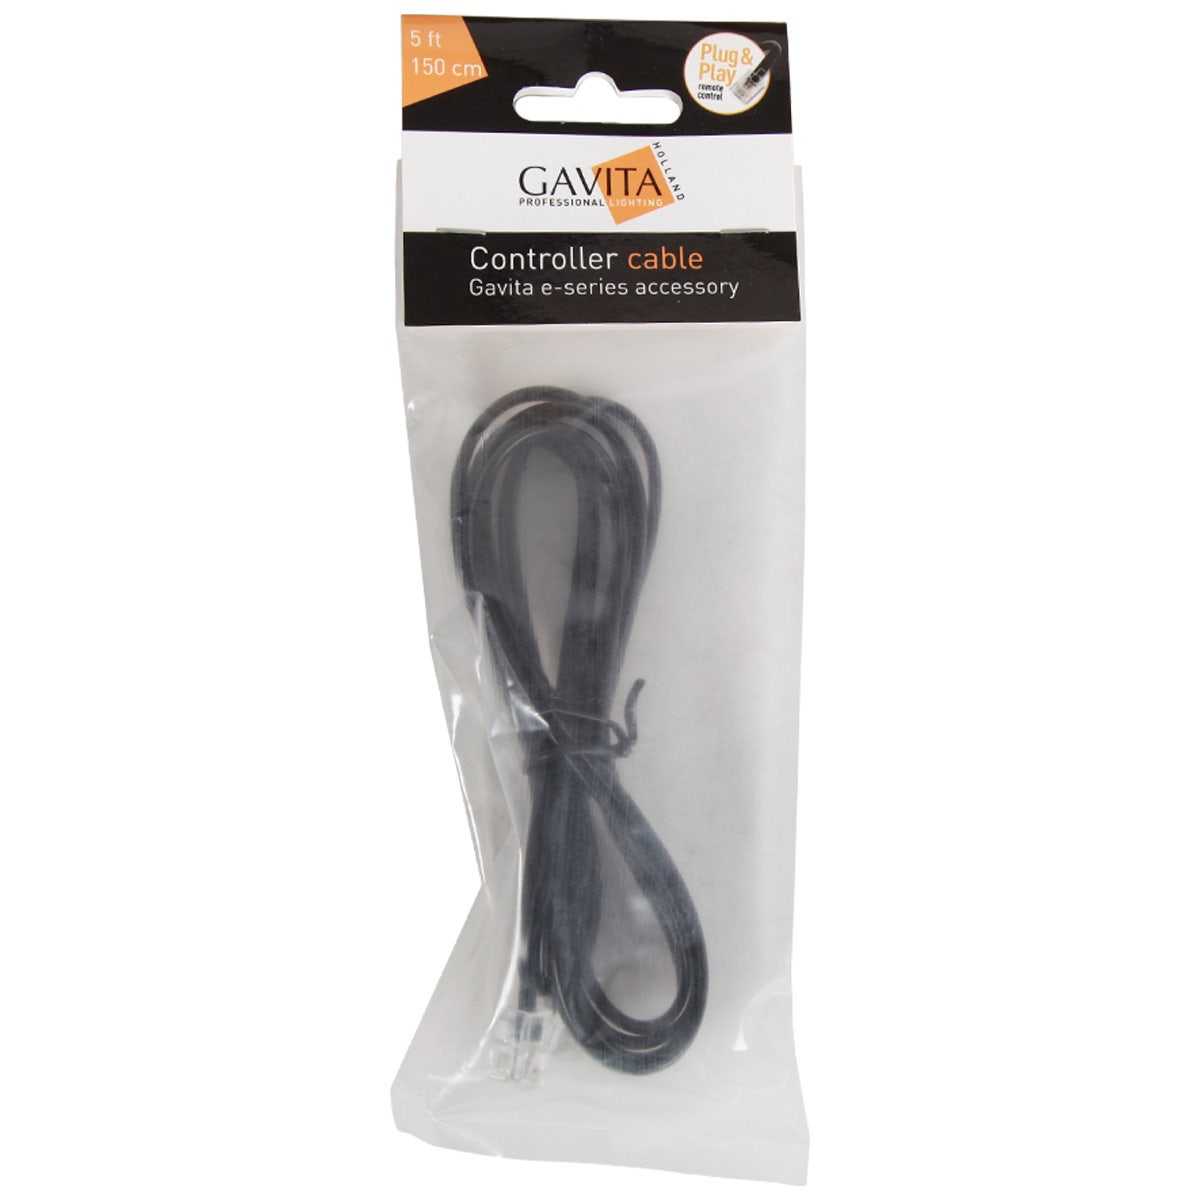 Gavita Accessories - Controller Cable